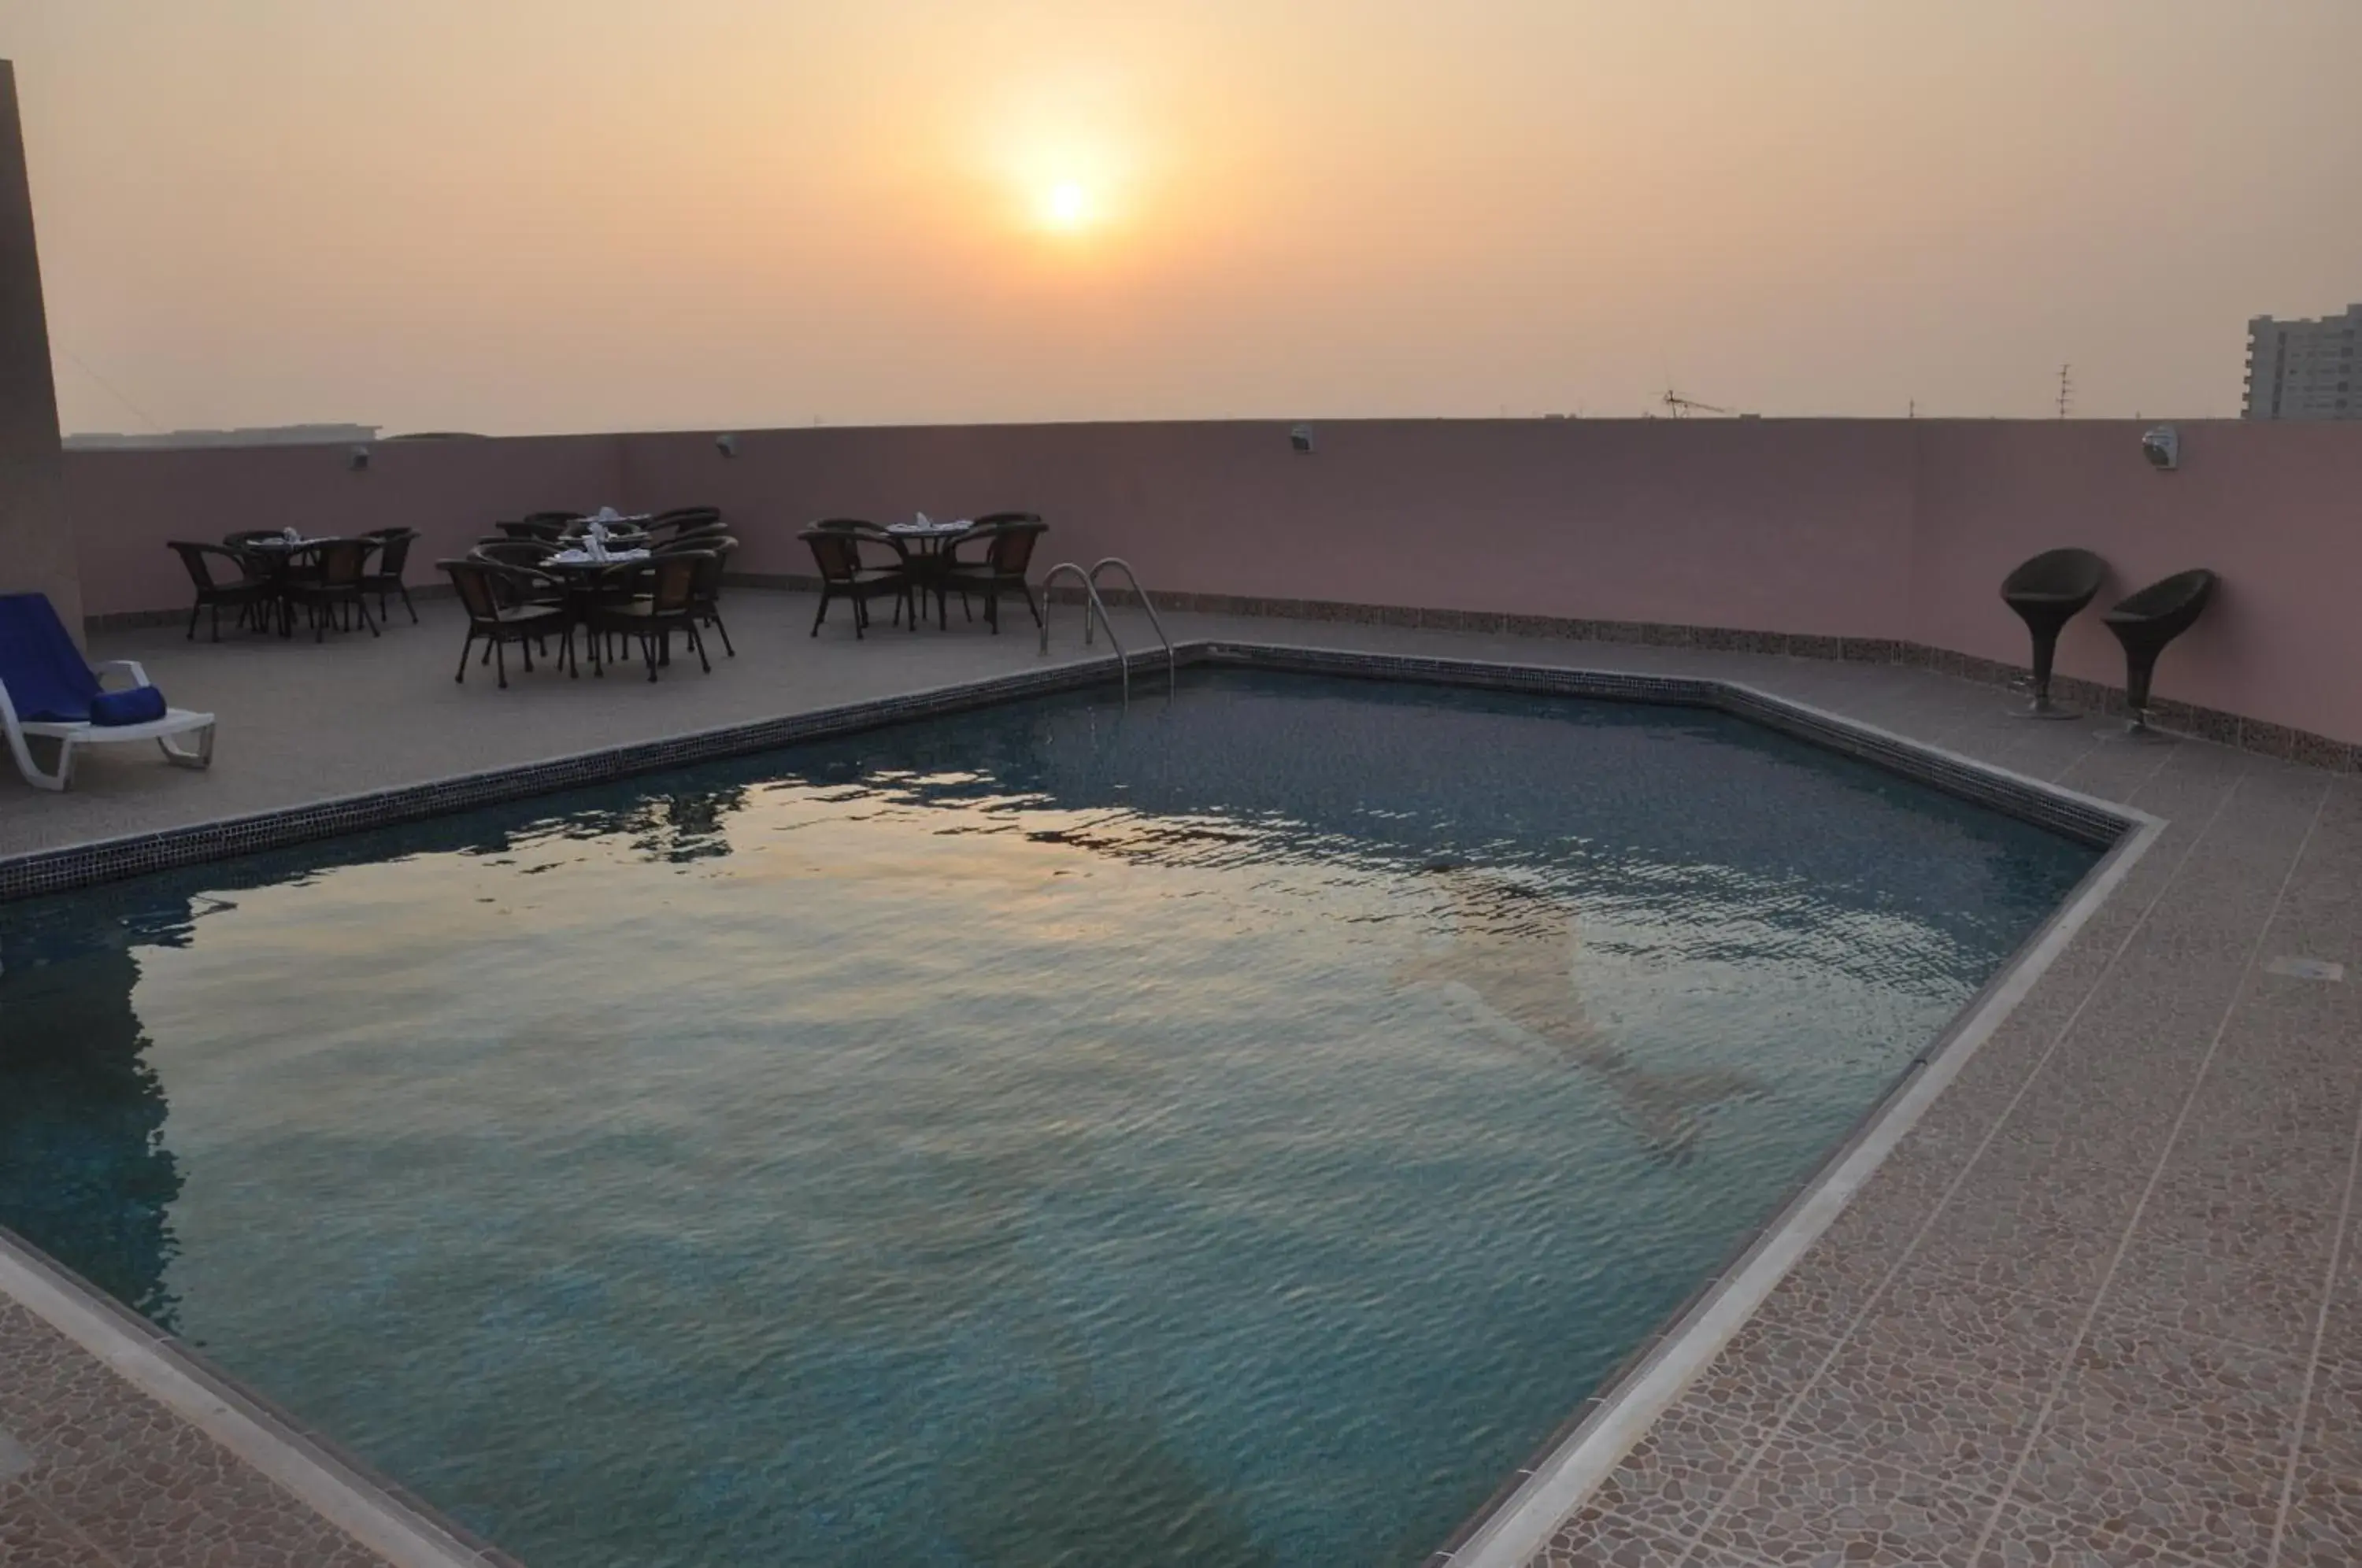 Swimming Pool in Fortune Plaza Hotel, Dubai Airport